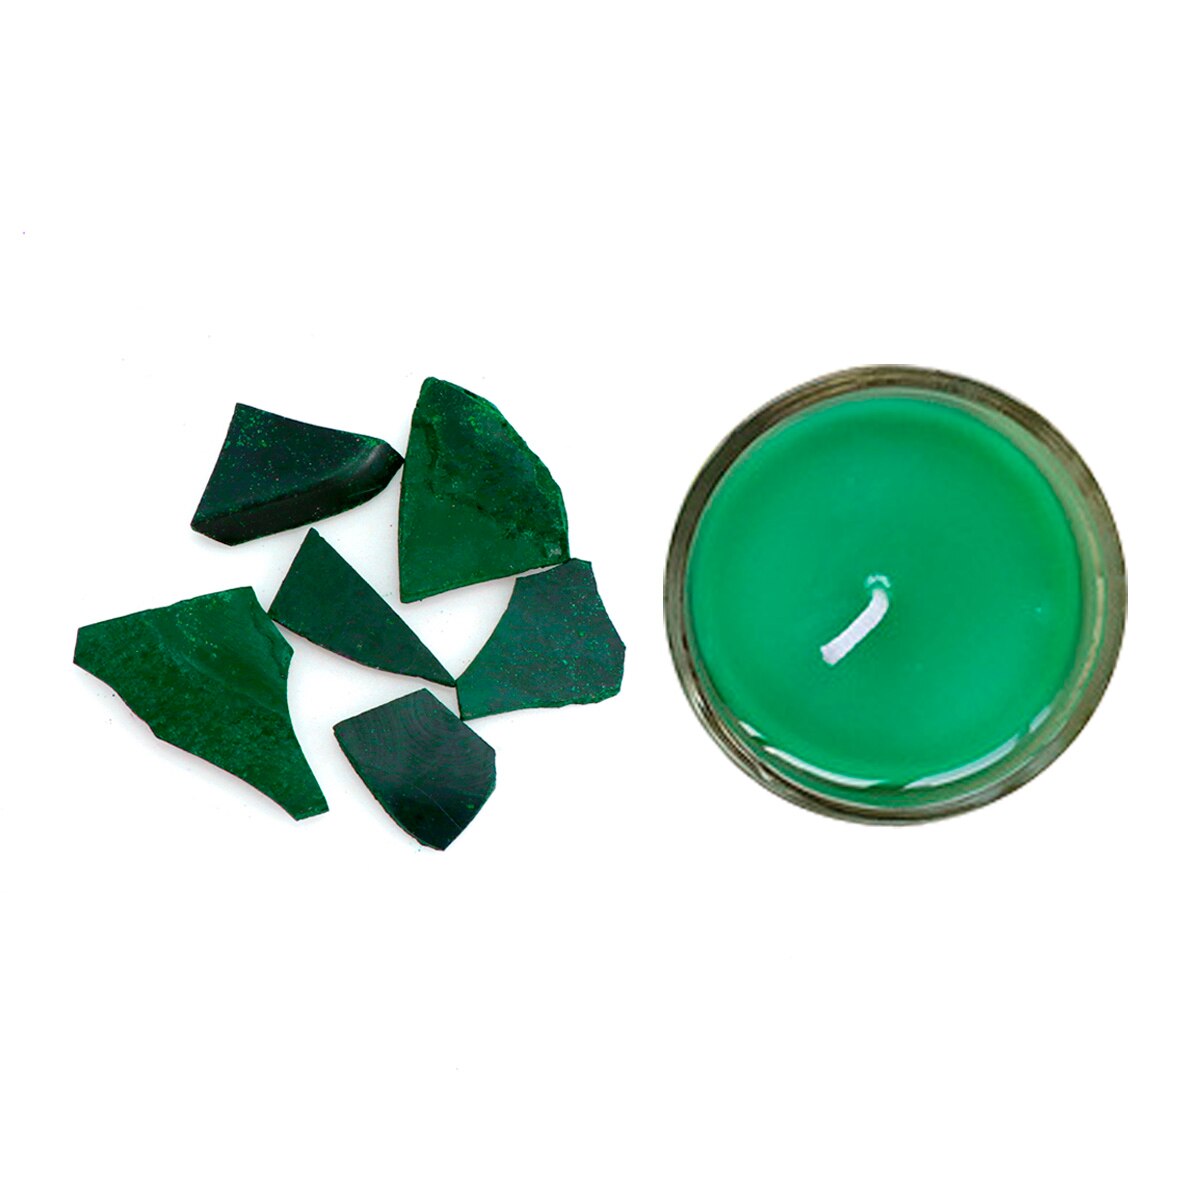 5g diy stearinlysfremstilling af voksfarvestoffer til 1kg sojaoliefarve stearinlys leverer pigmenter med forme til fremstilling af duftlys: Grøn